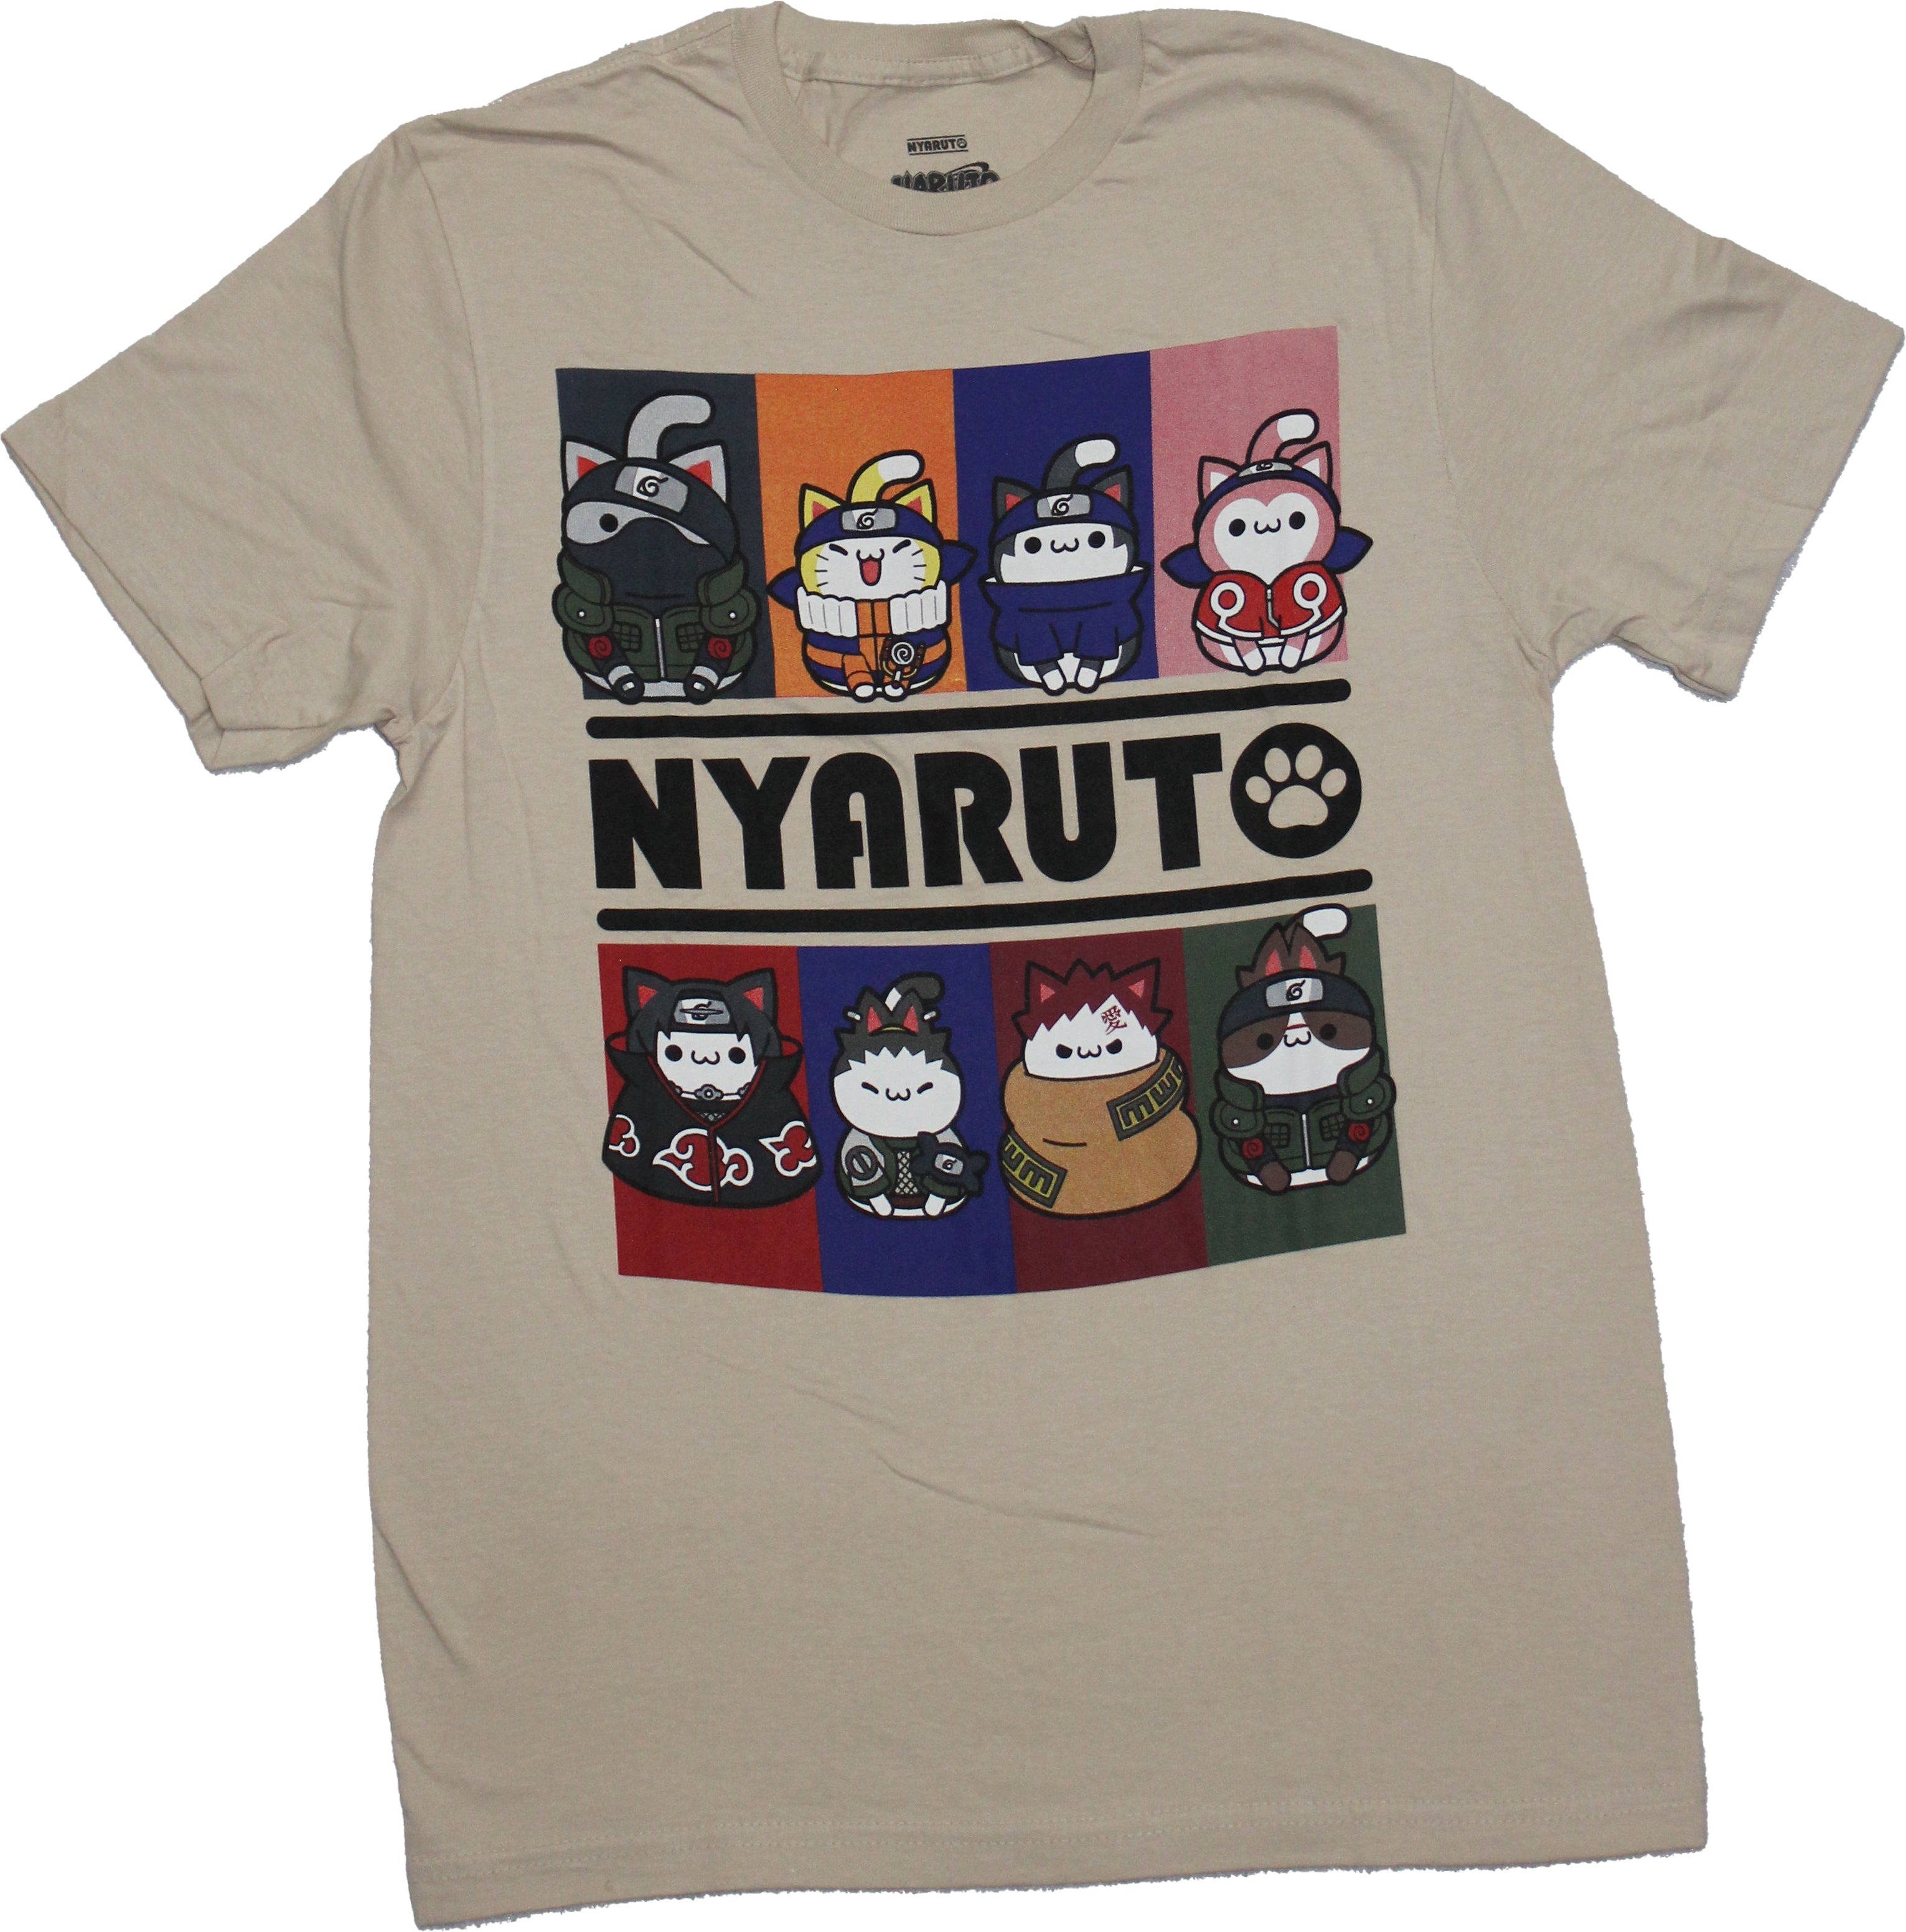 Naruto Nyaruto Mens T-Shirt - Cat Style 8 Box Nyaruto Characters